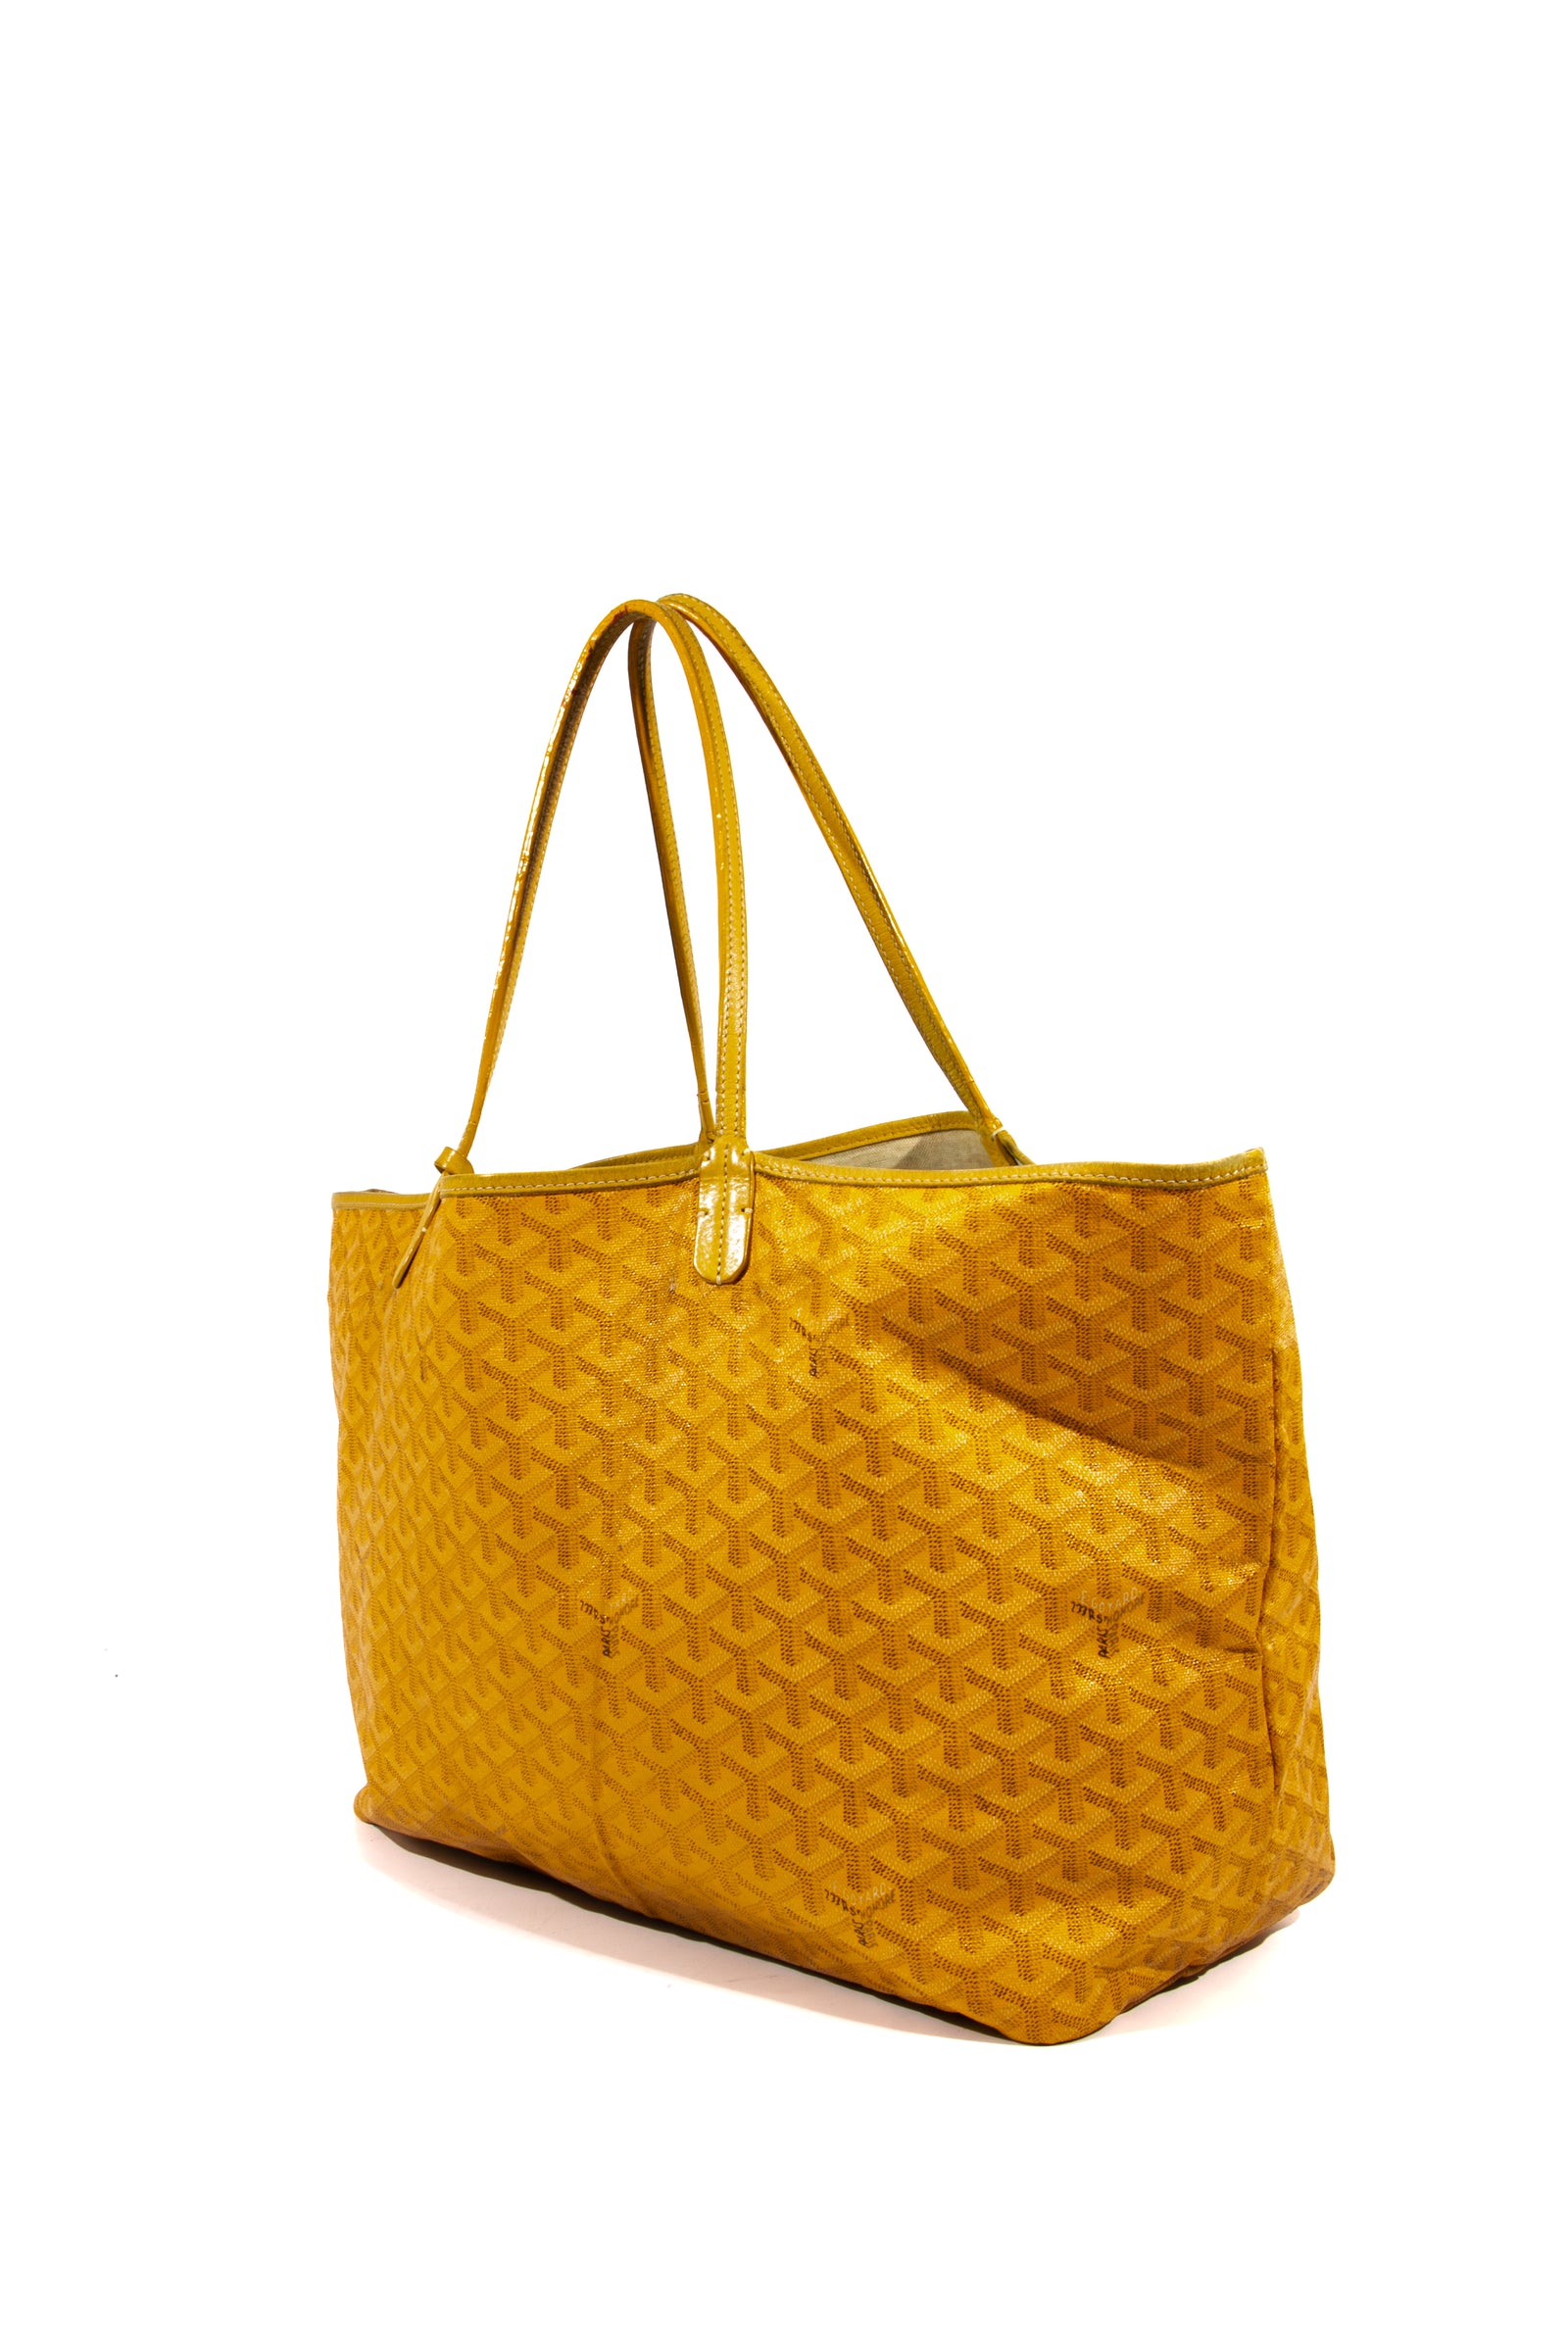 Goyard Bags - Buy your next Goyard Bag at Collector's Cage – Collectors cage